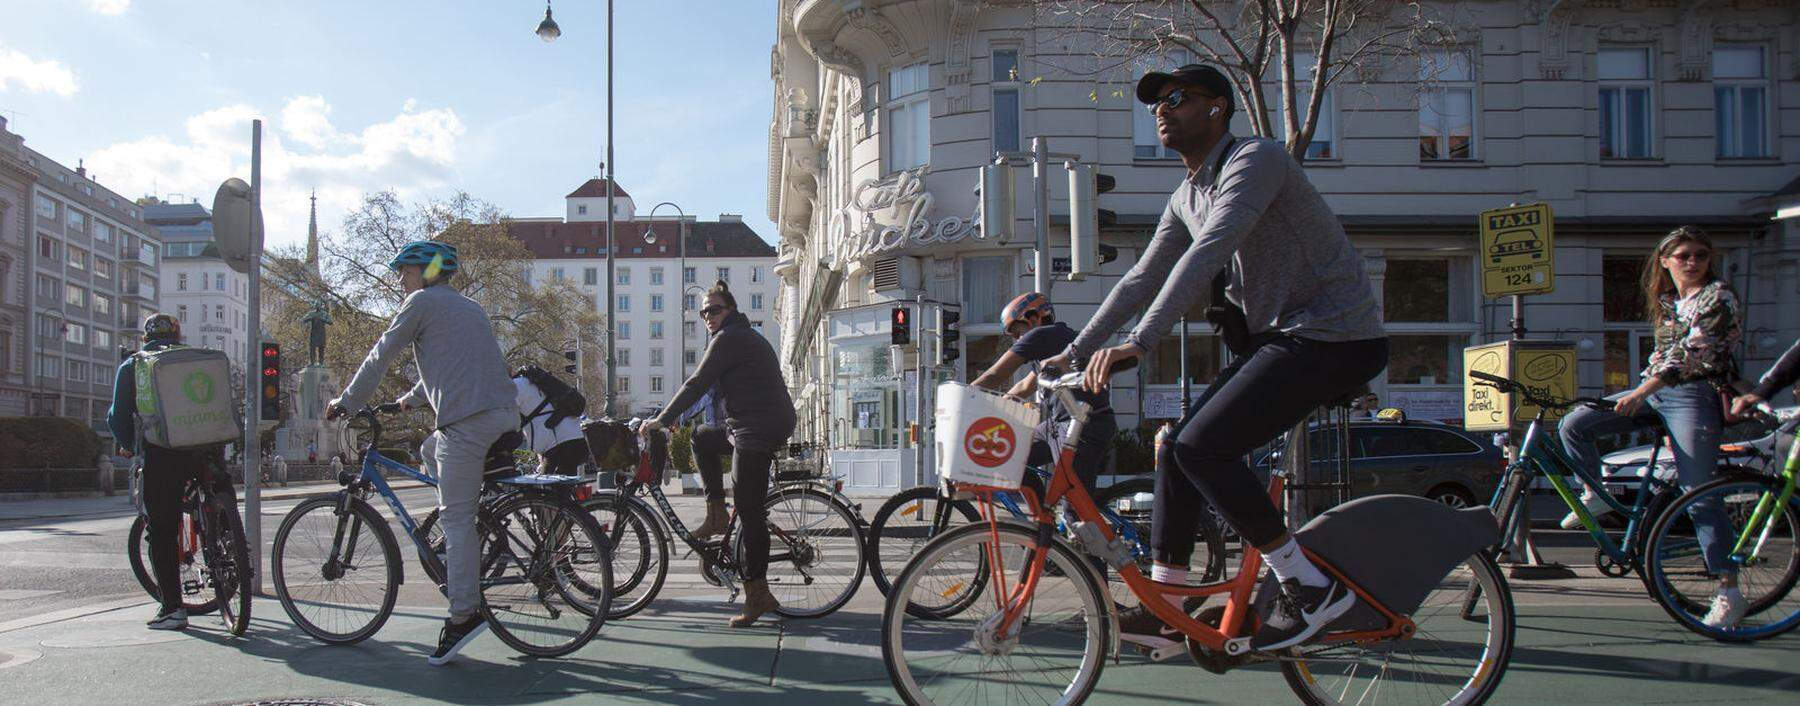 In Wien zählte man im Mai um 45 Prozent mehr Radfahrer als im Vergleichsmonat 2019.